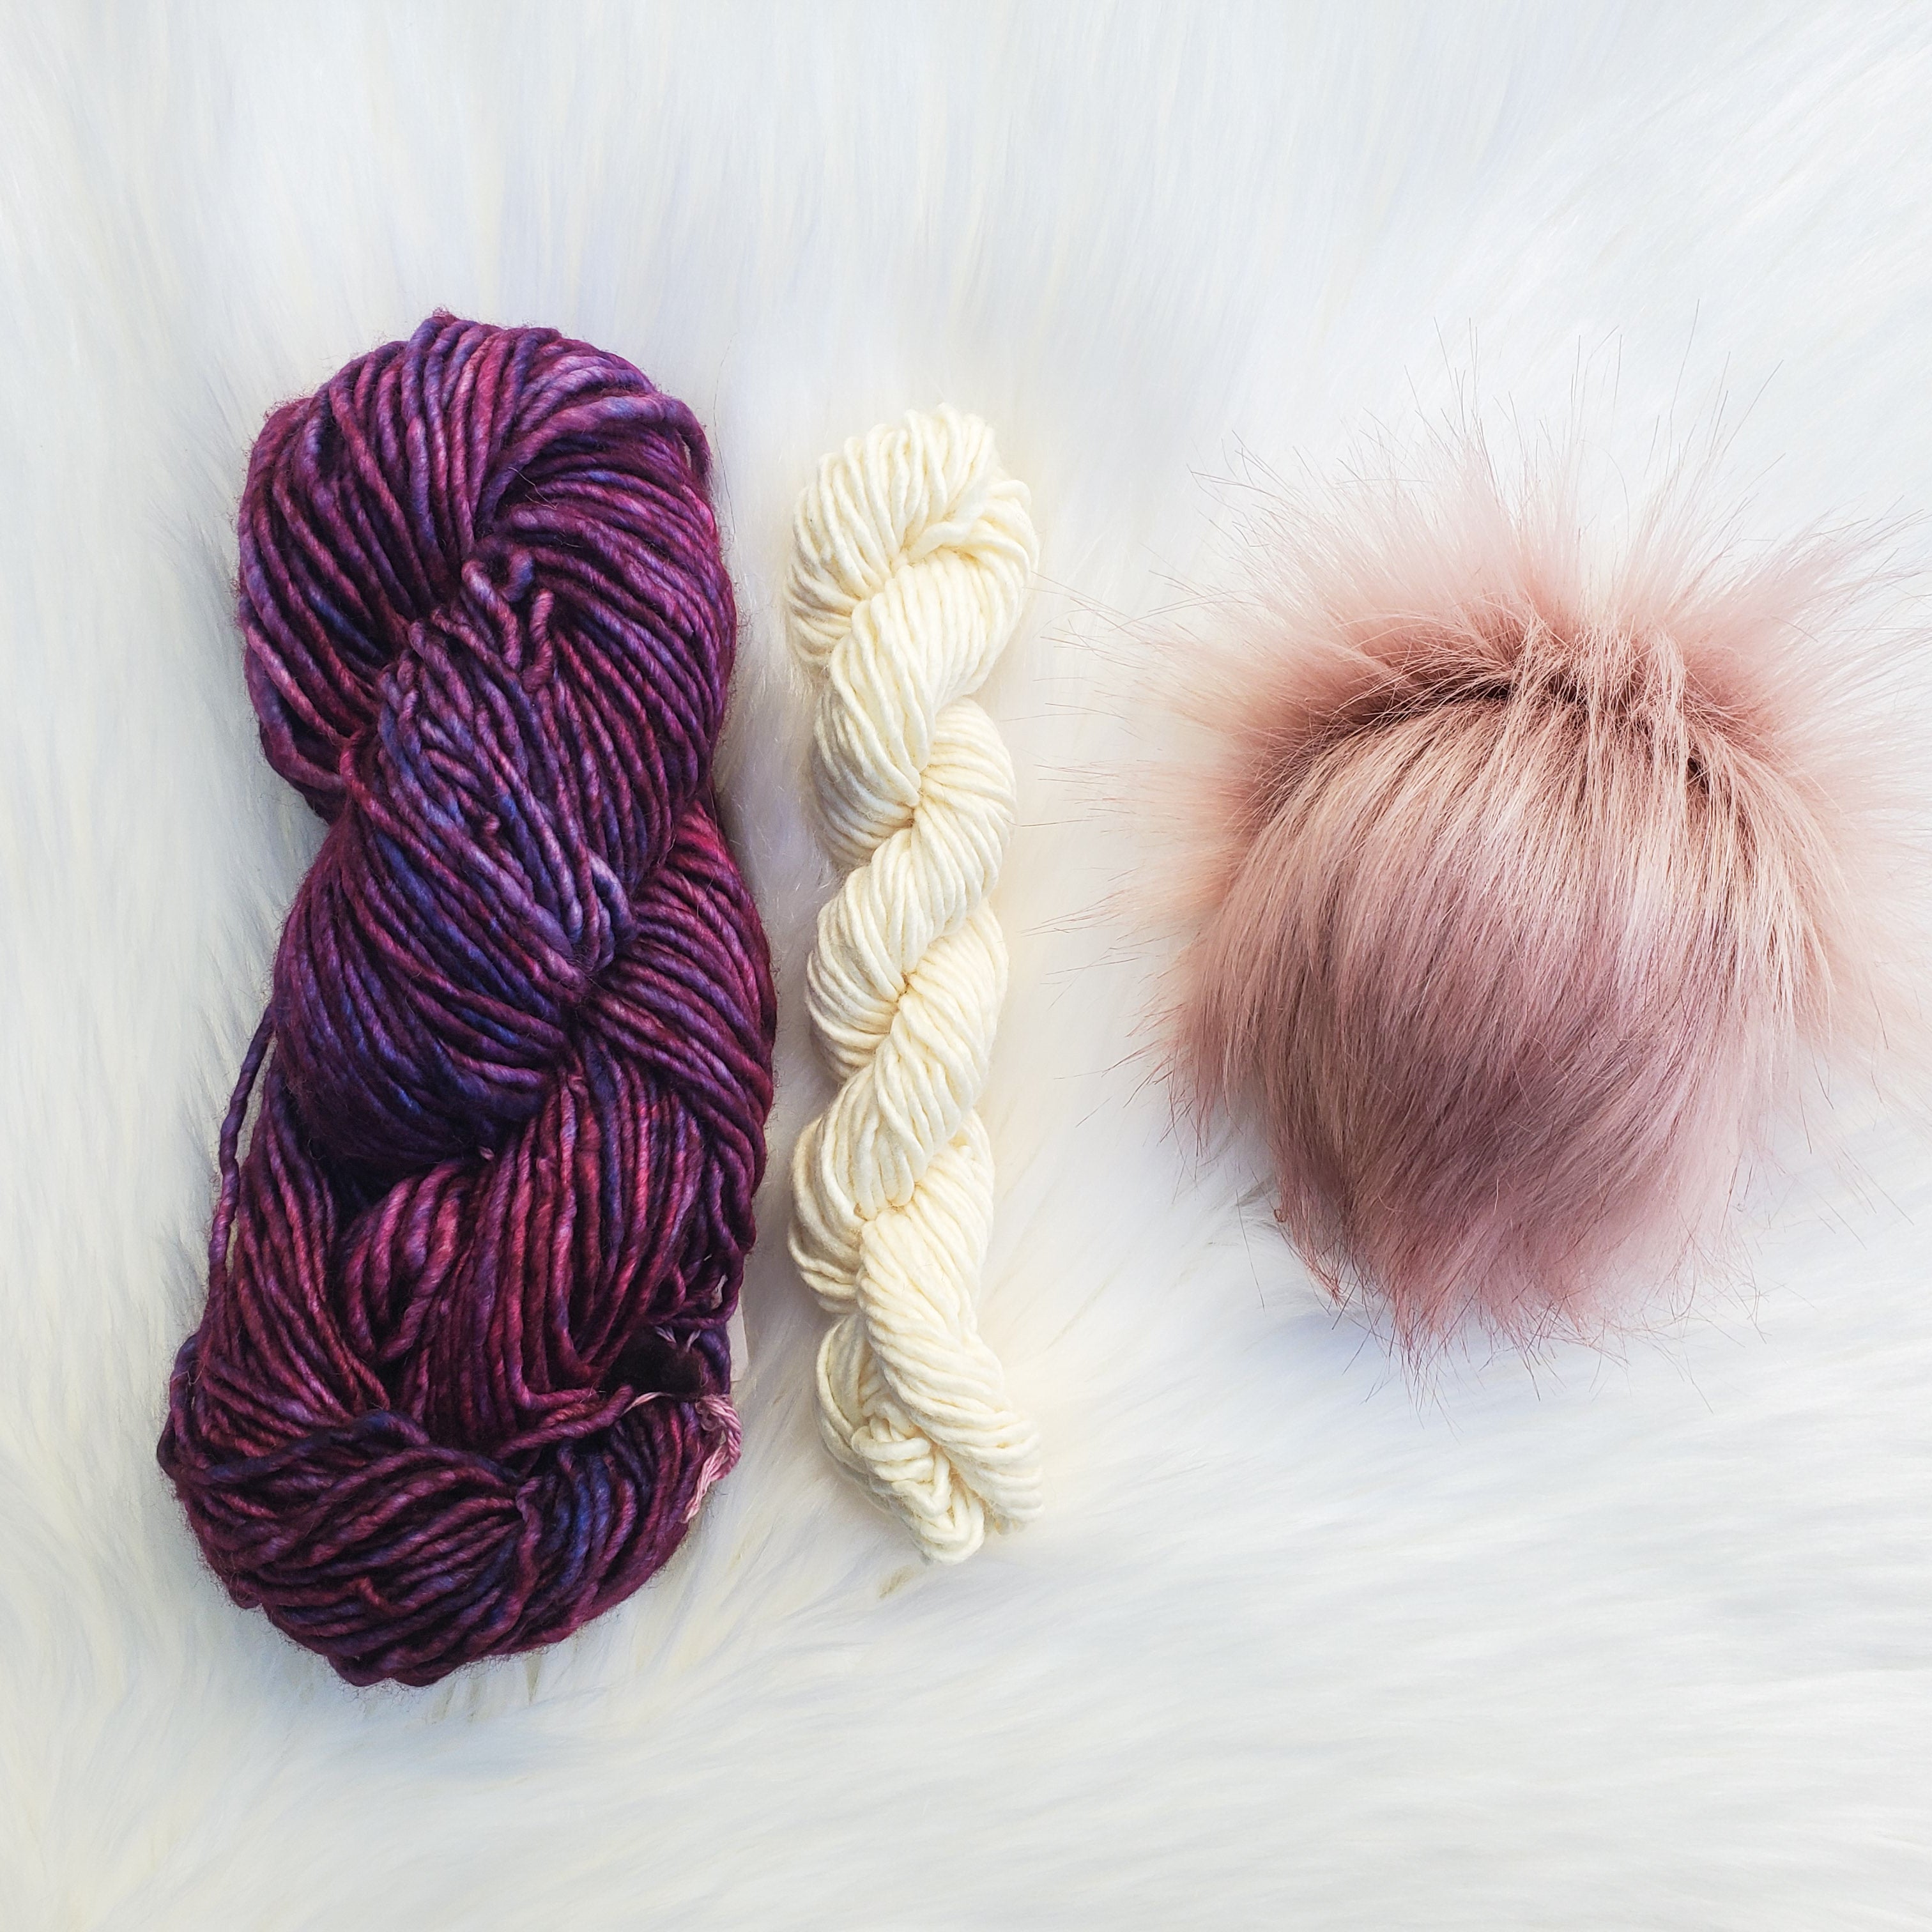 Paysandu - Winter Winds Knitting Kit - 0